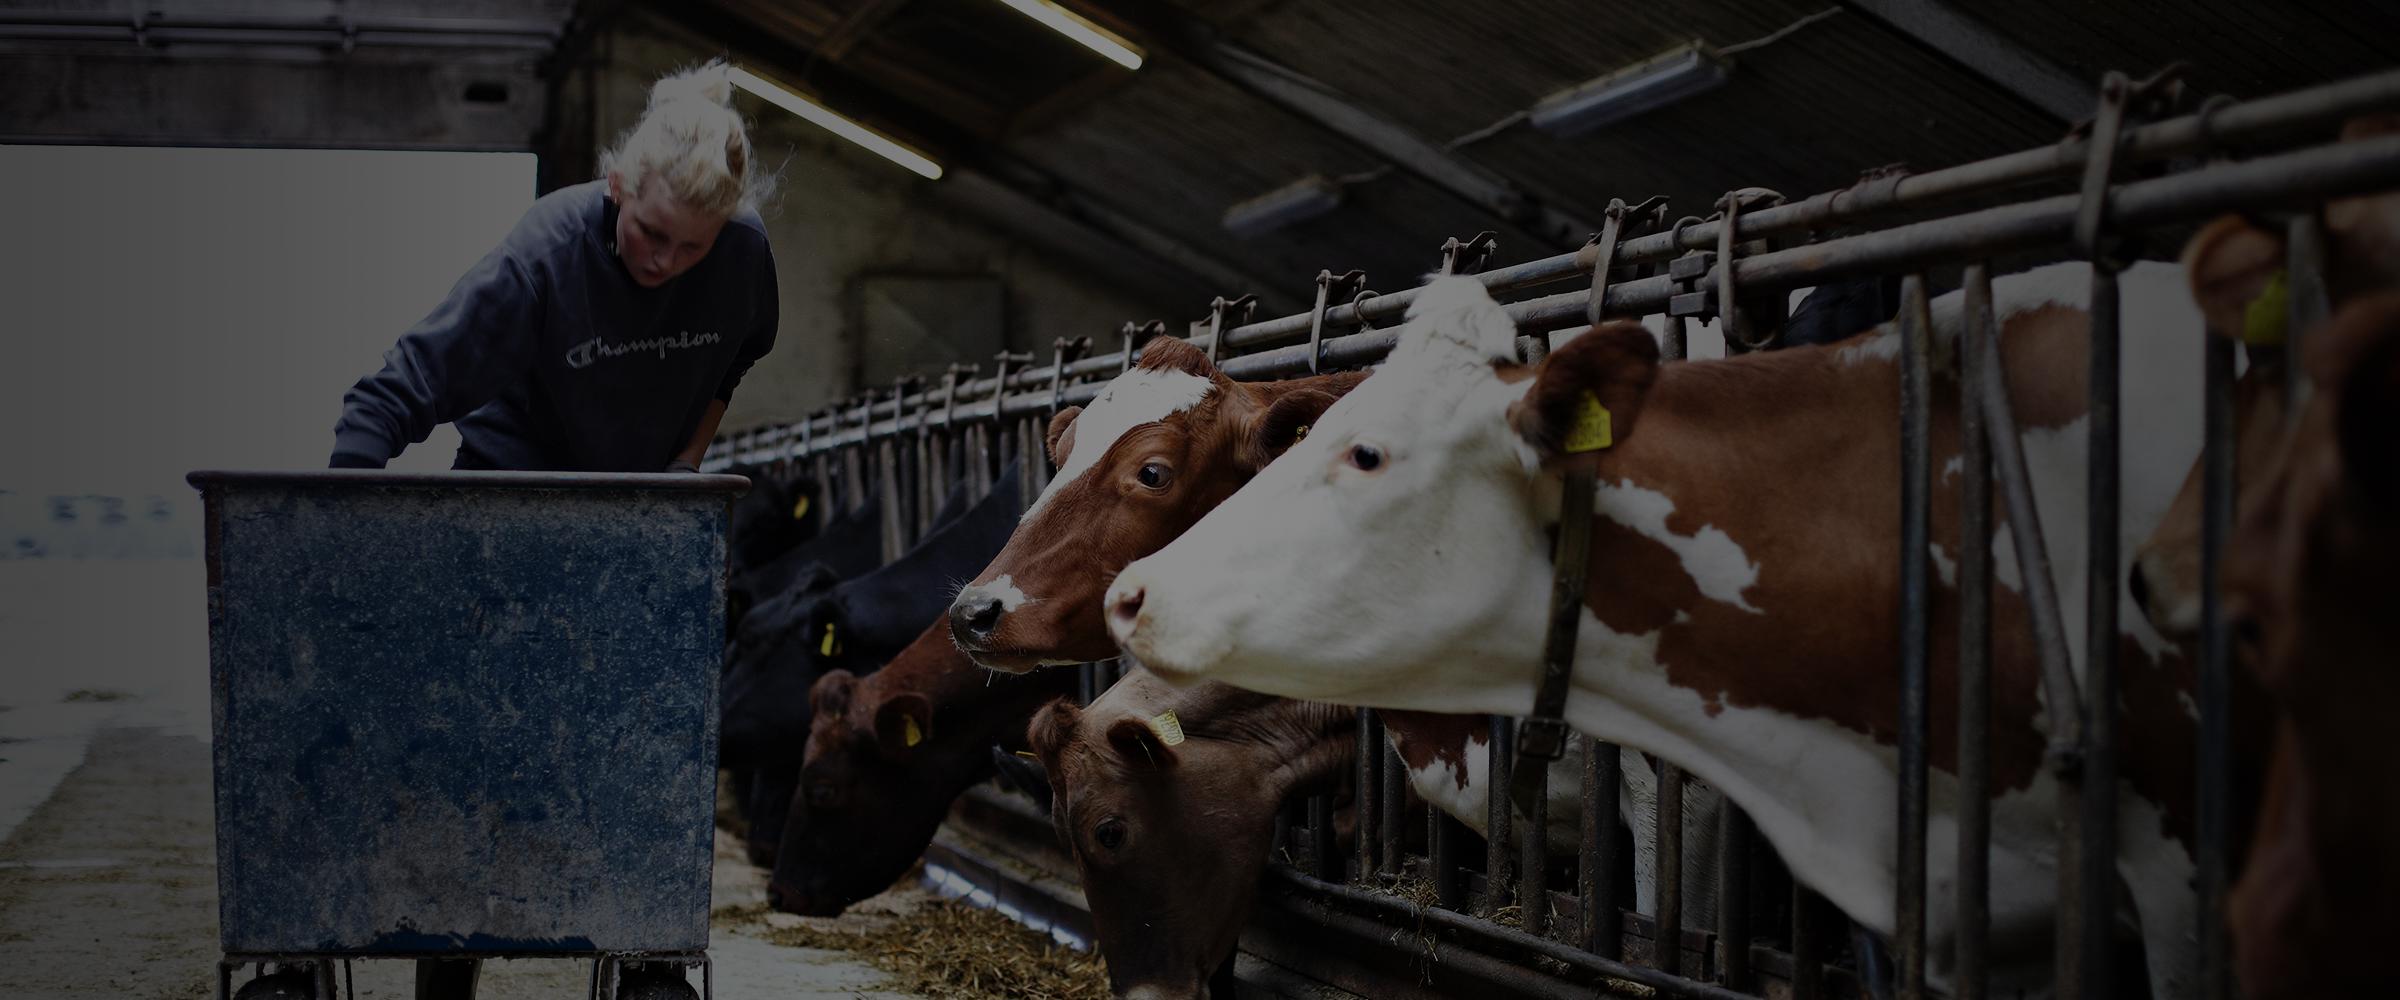 Farmer feeding cows in a barn